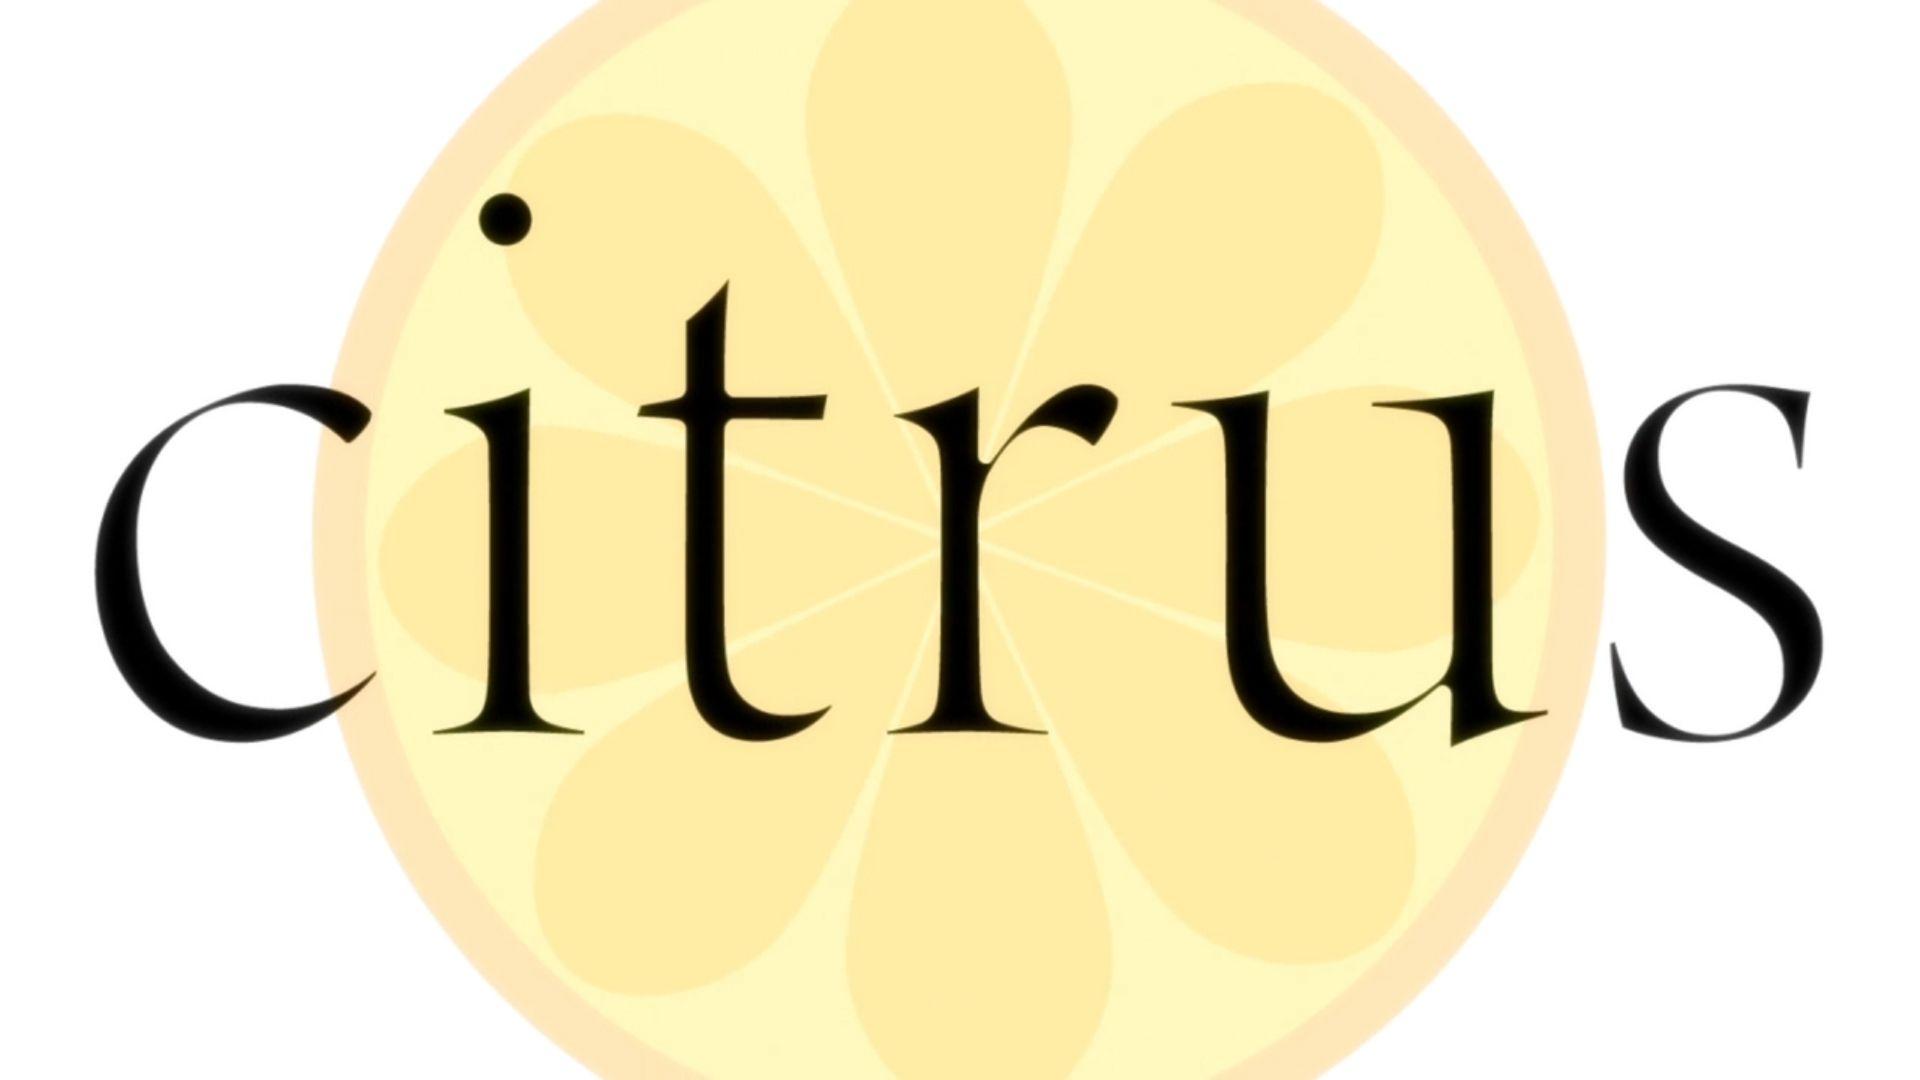 Citrus Logo - Citrus Review – The Outerhaven